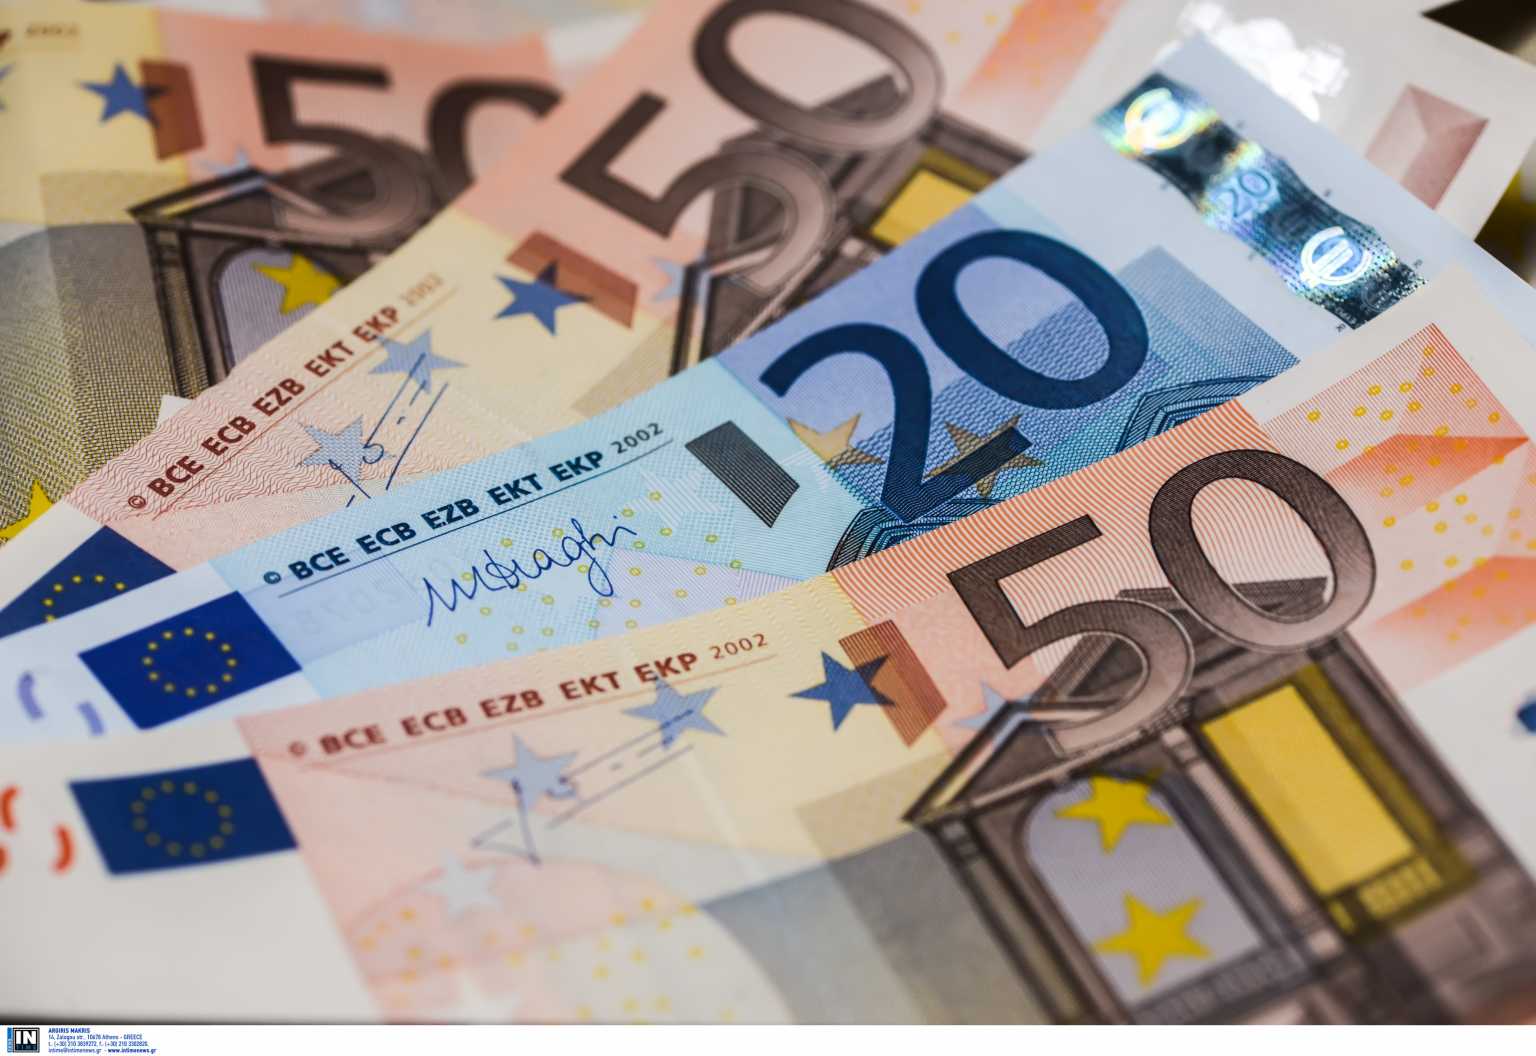 Βόλος: Σήκωσαν και τα 50.000 € από τον τραπεζικό του λογαριασμό – Η απάτη και το μεγάλο λάθος